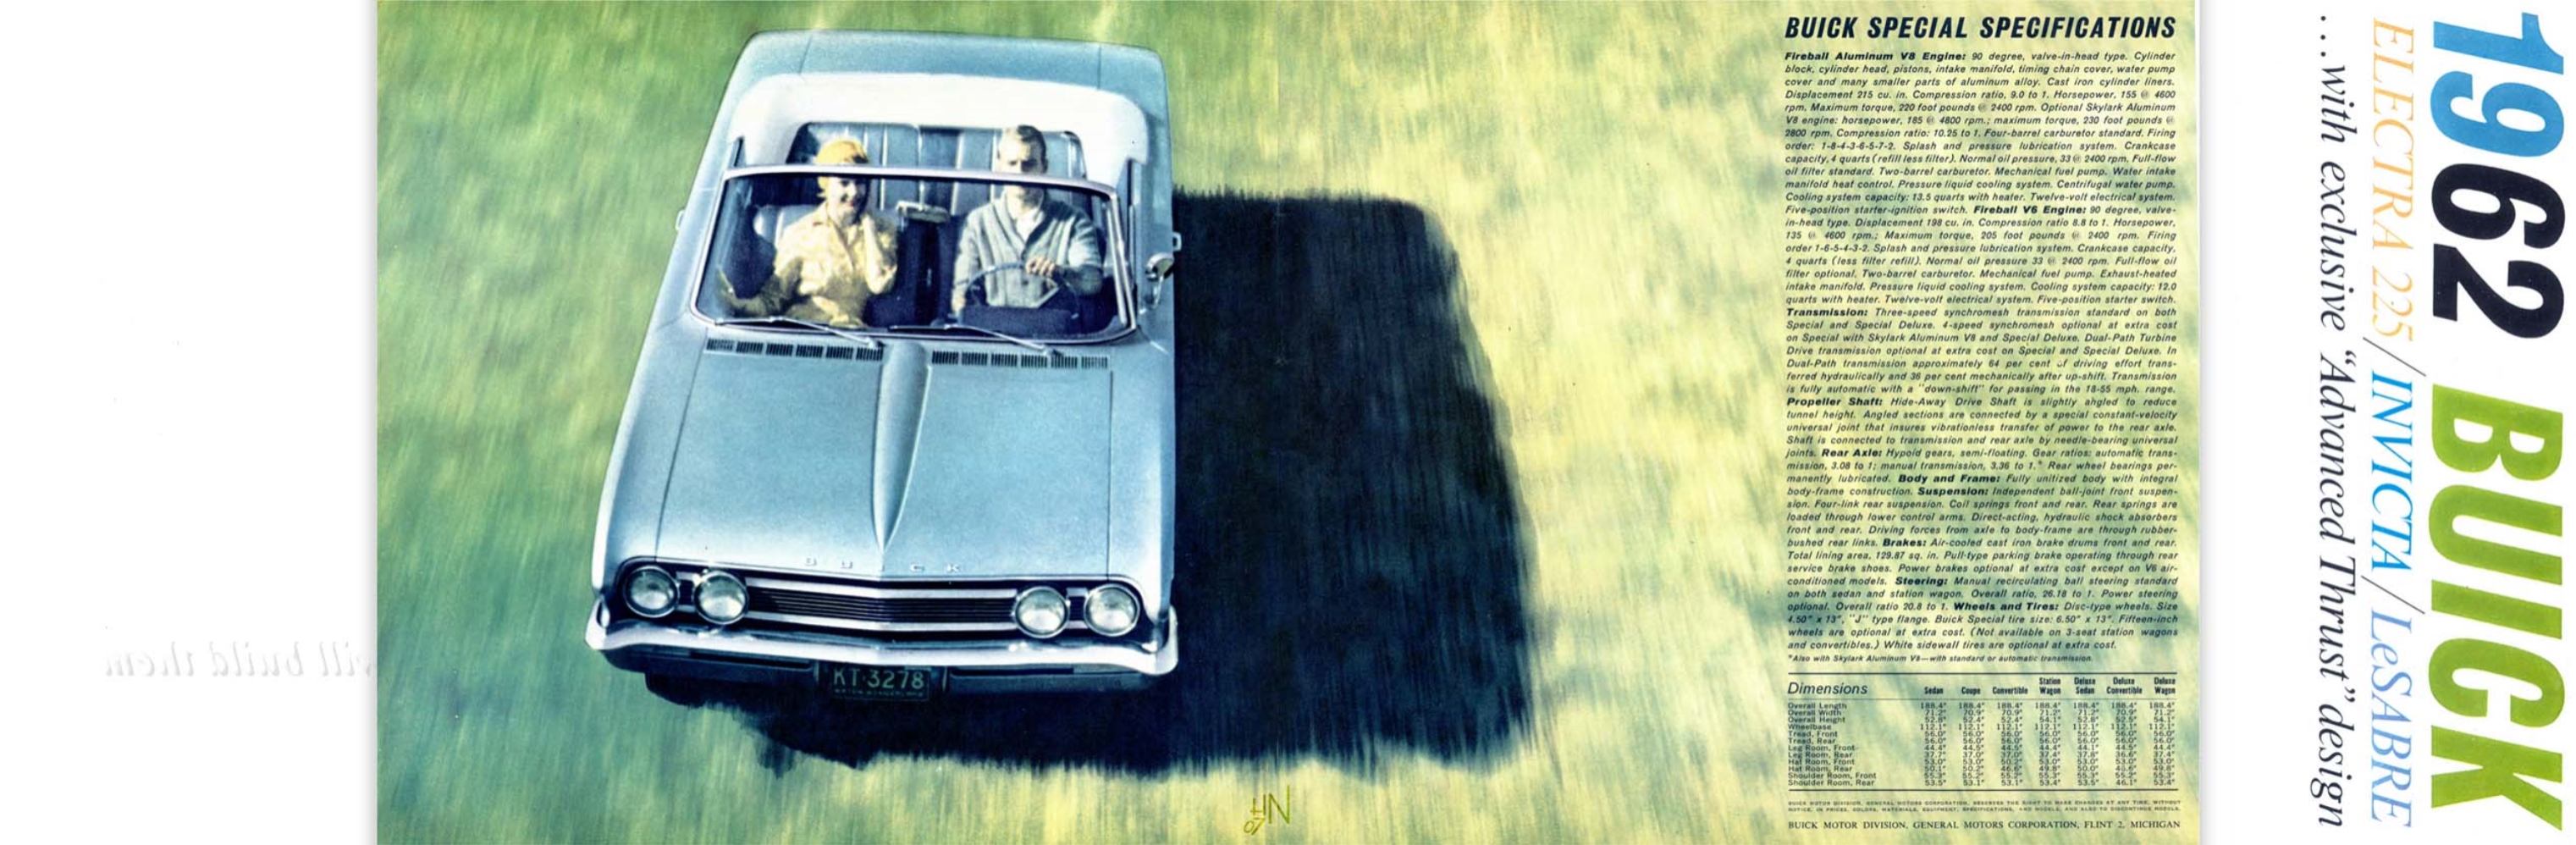 1962 Buick Full Line Prestige-16-17